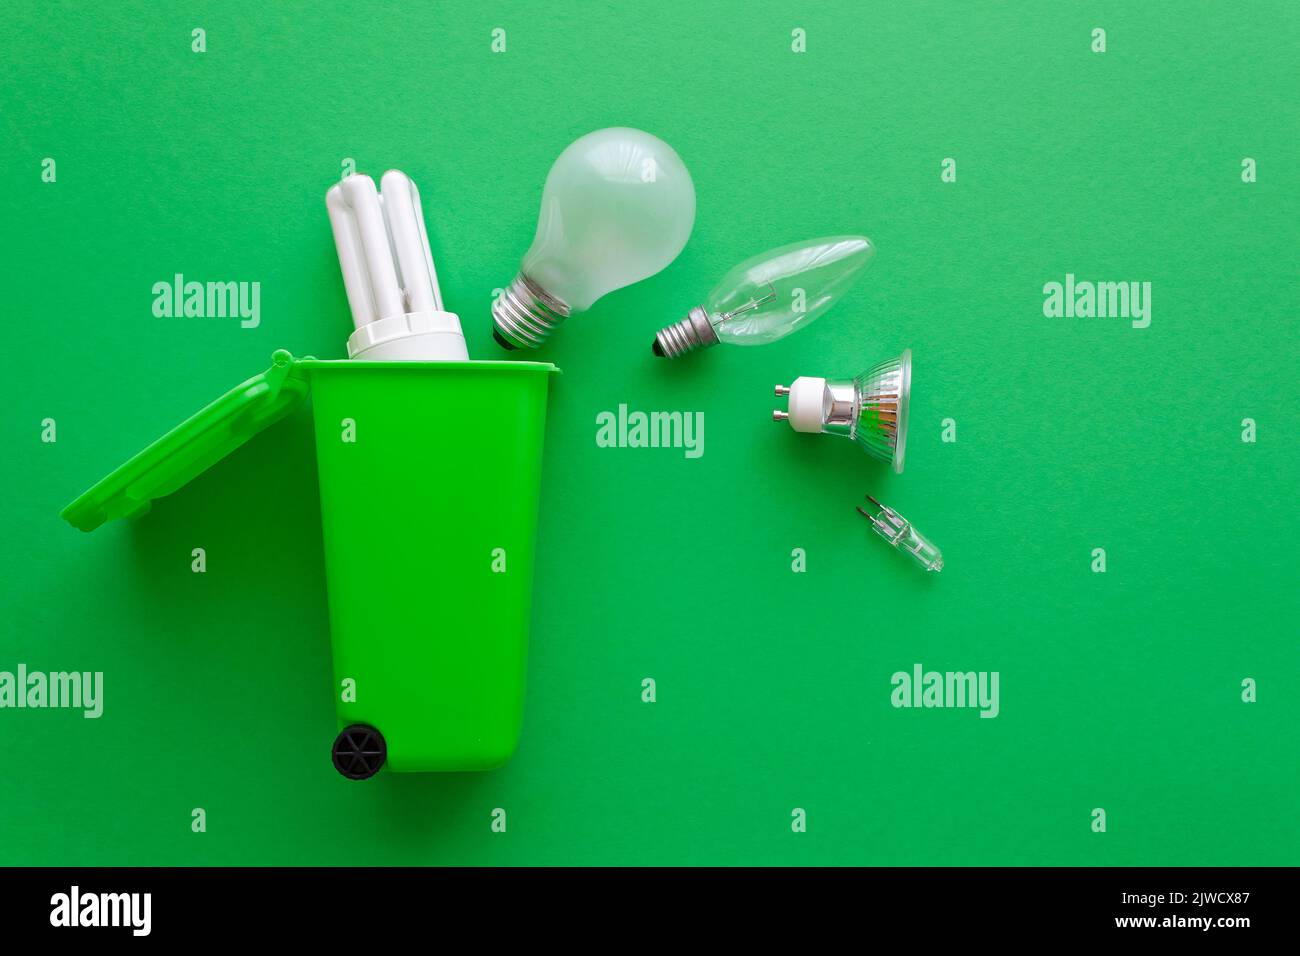 Stop Energy Waste Concept: Diverse alte Halogen- und Leuchtstofflampen auf dem Weg in einen Recyclingbehälter, grünen Hintergrund, Text- oder Kopierraum. Stockfoto